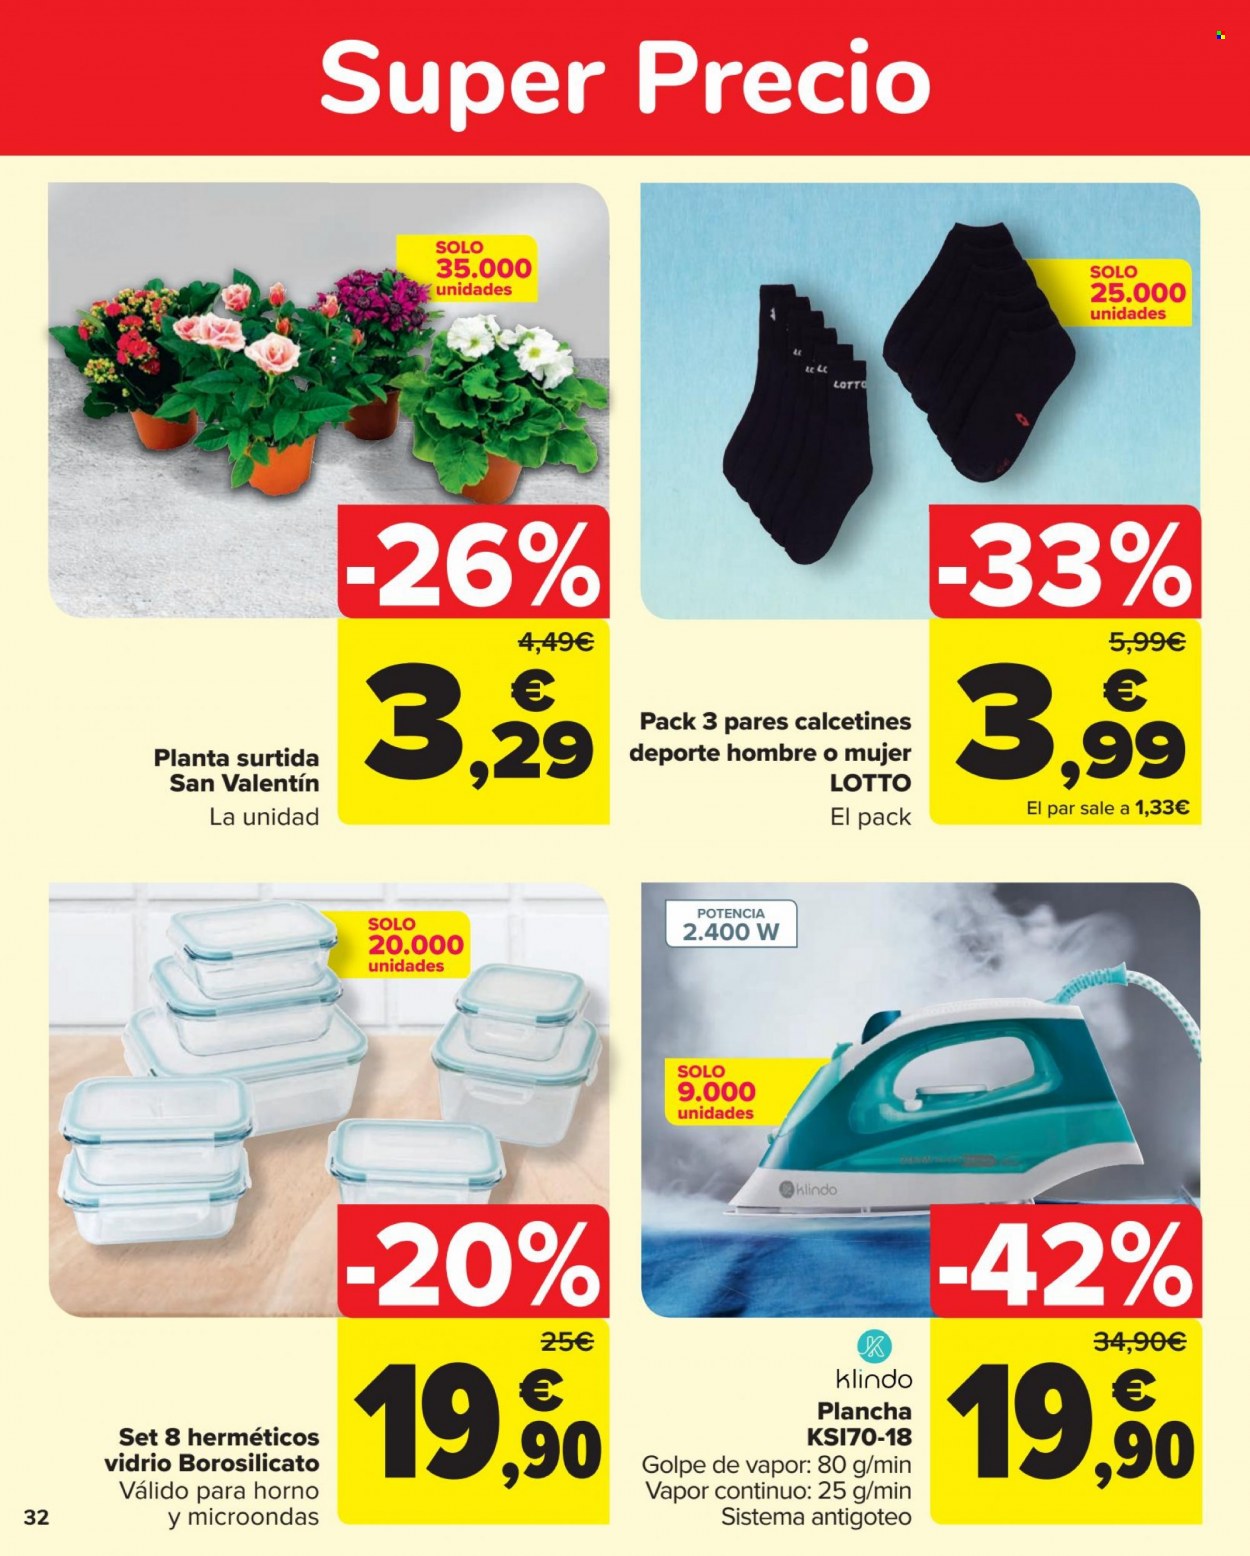 thumbnail - Folleto actual Carrefour - 27/01/23 - 13/02/23 - Ventas - Klindo, Lotto, caja de plástico, calcetínes. Página 32.